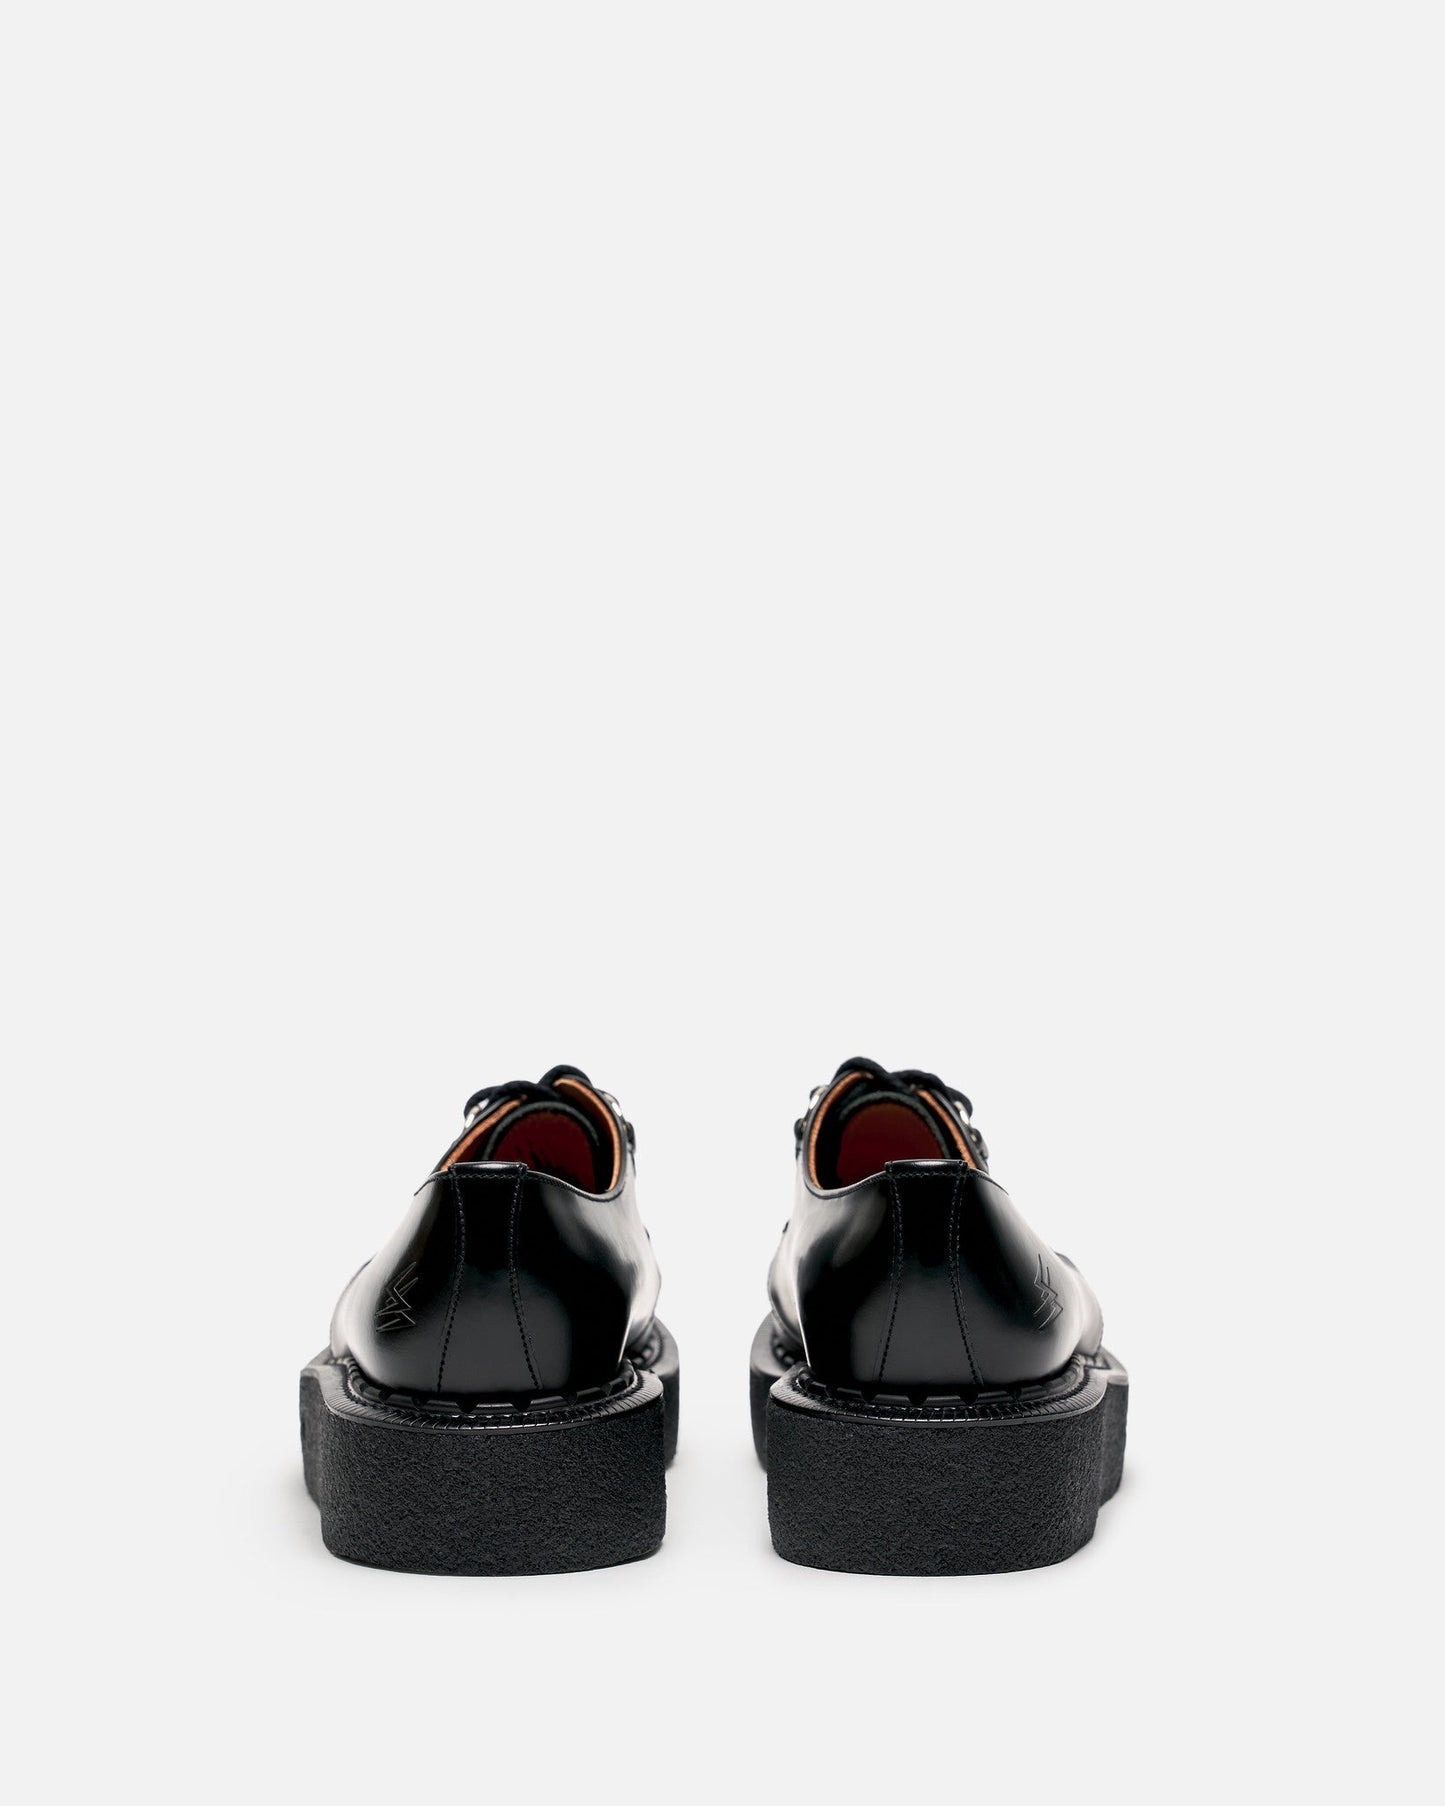 UNDERCOVER Men's Shoes Platform Derby in Black